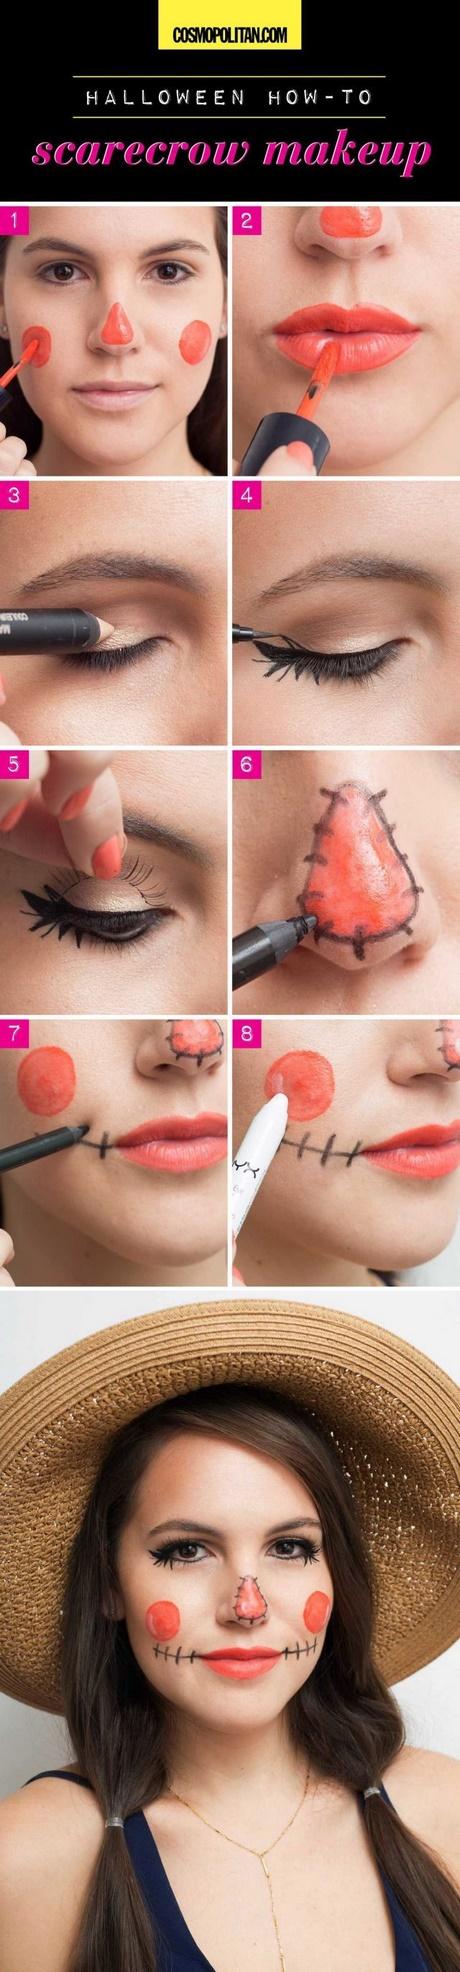 makeup-tutorial-for-kids-10-50_4 Make-up les voor kinderen 10